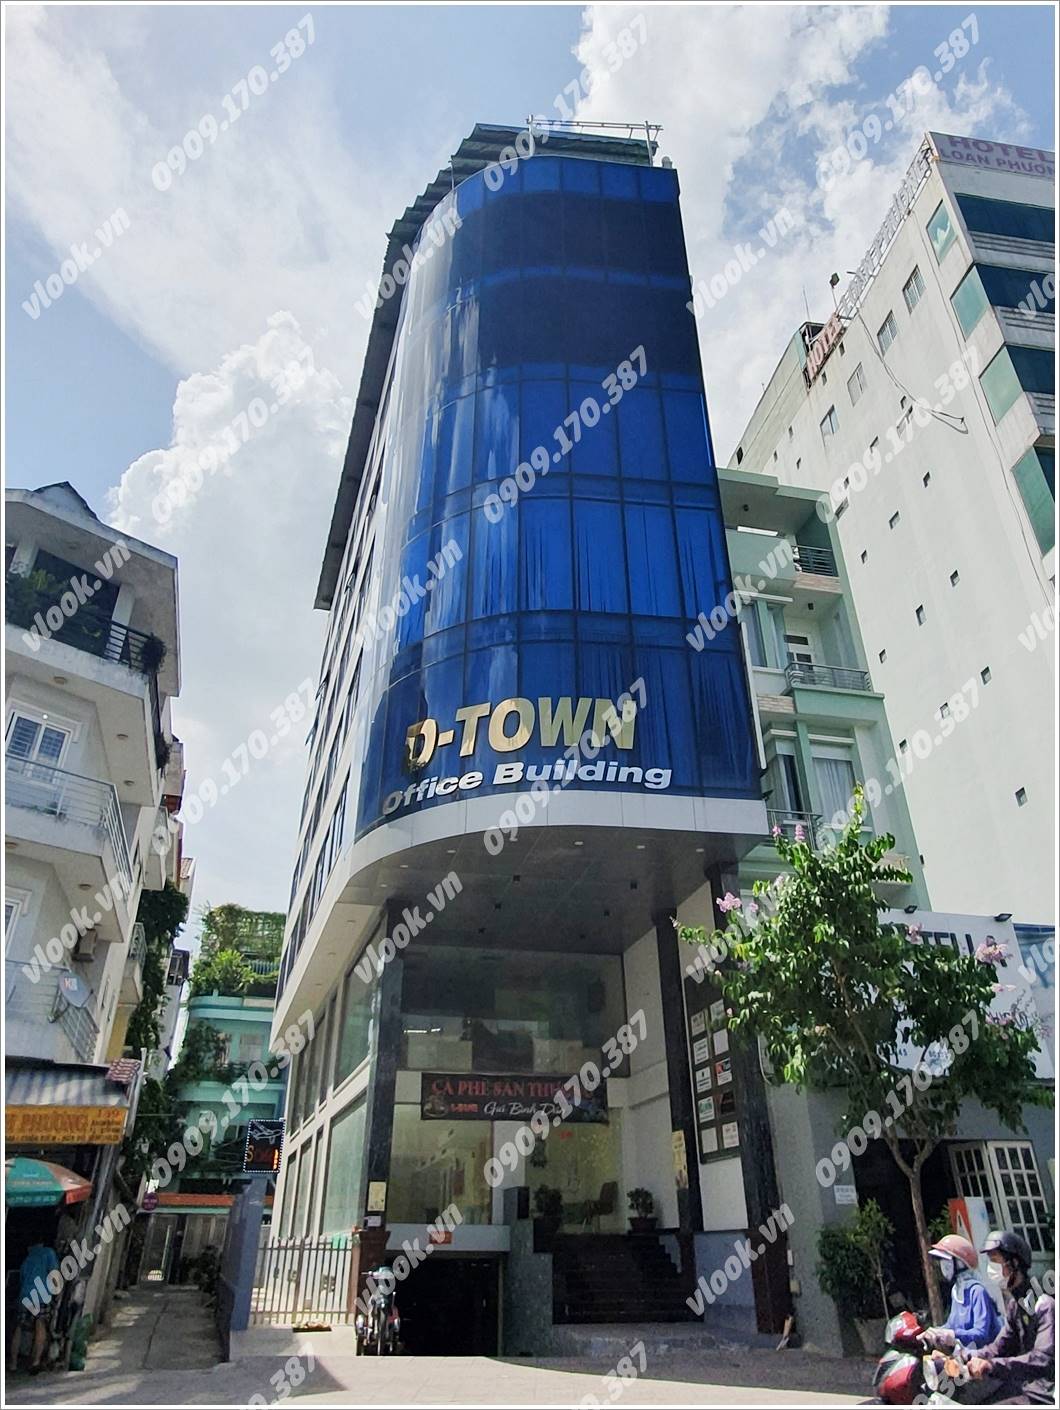 Cao ốc cho thuê Văn phòng D-Town Office Building, Quận Tân Bình - vlook.vn